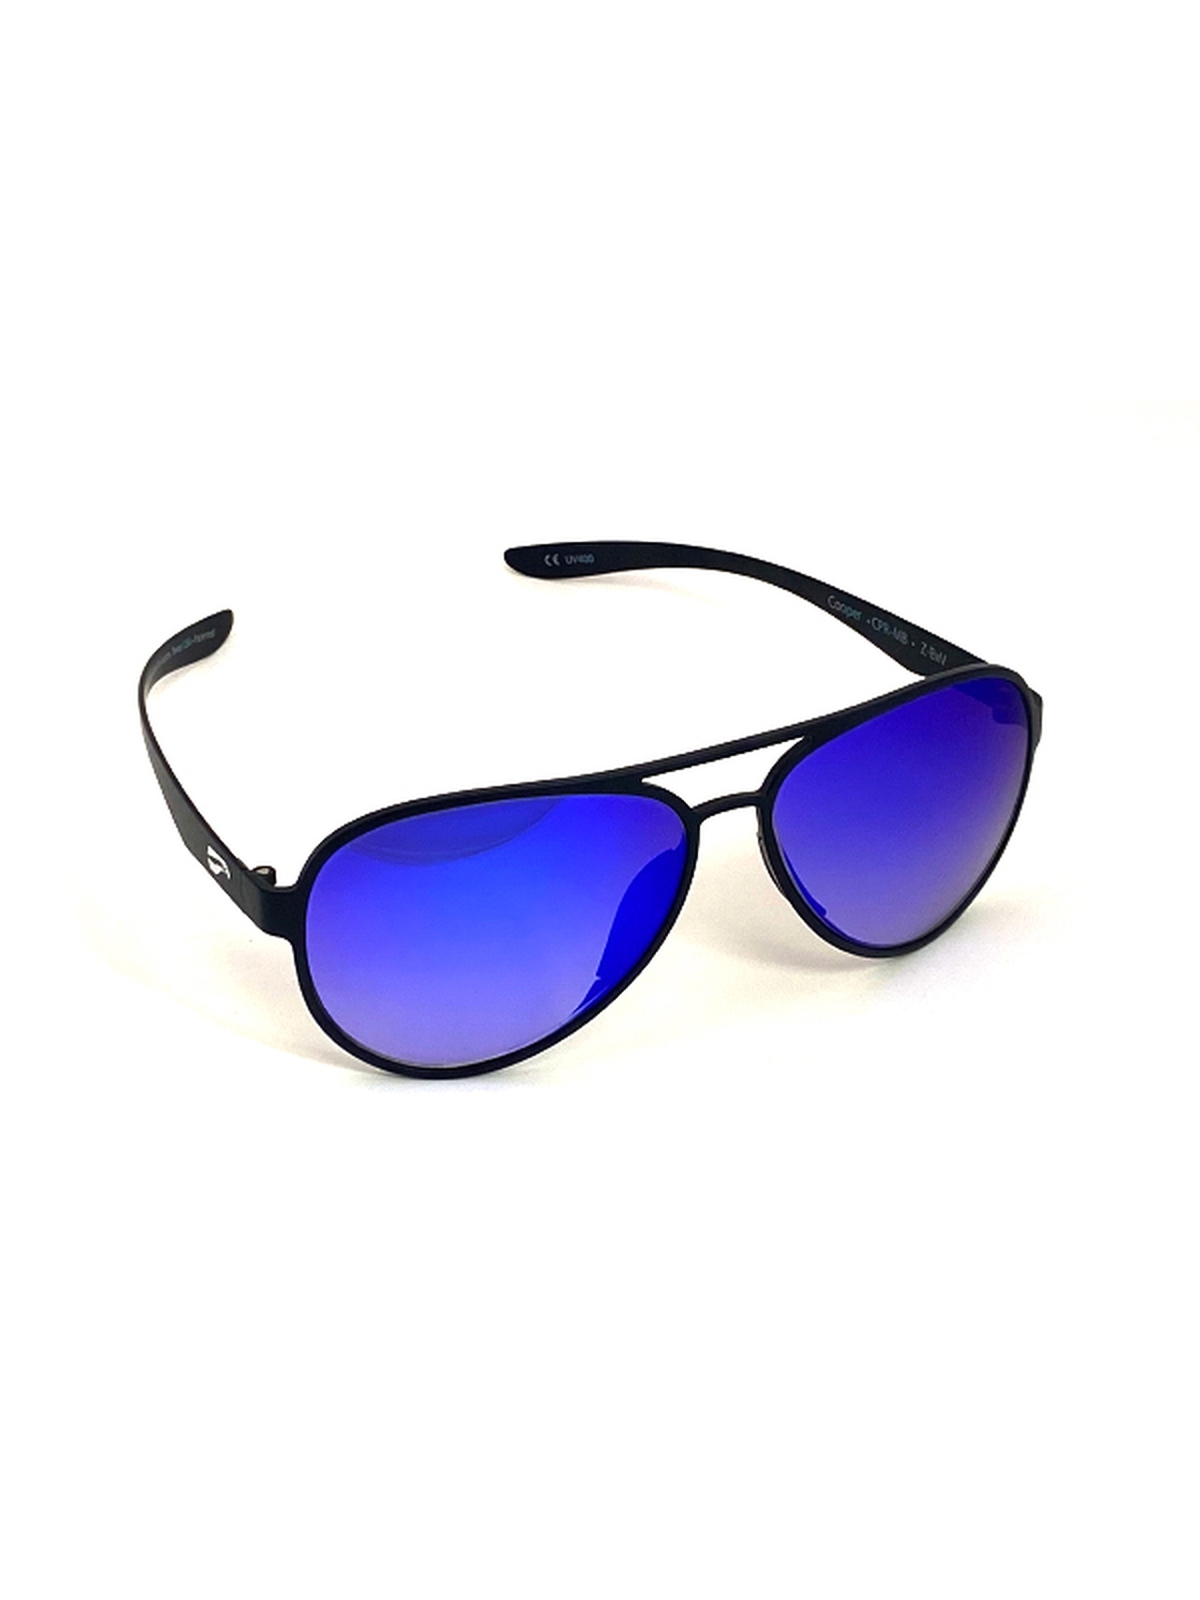 Flying Eyes Sonnenbrille Cooper Aviator - Rahmen matt schwarz, Linsen saphirblau (Verlauf, verspiegelt)